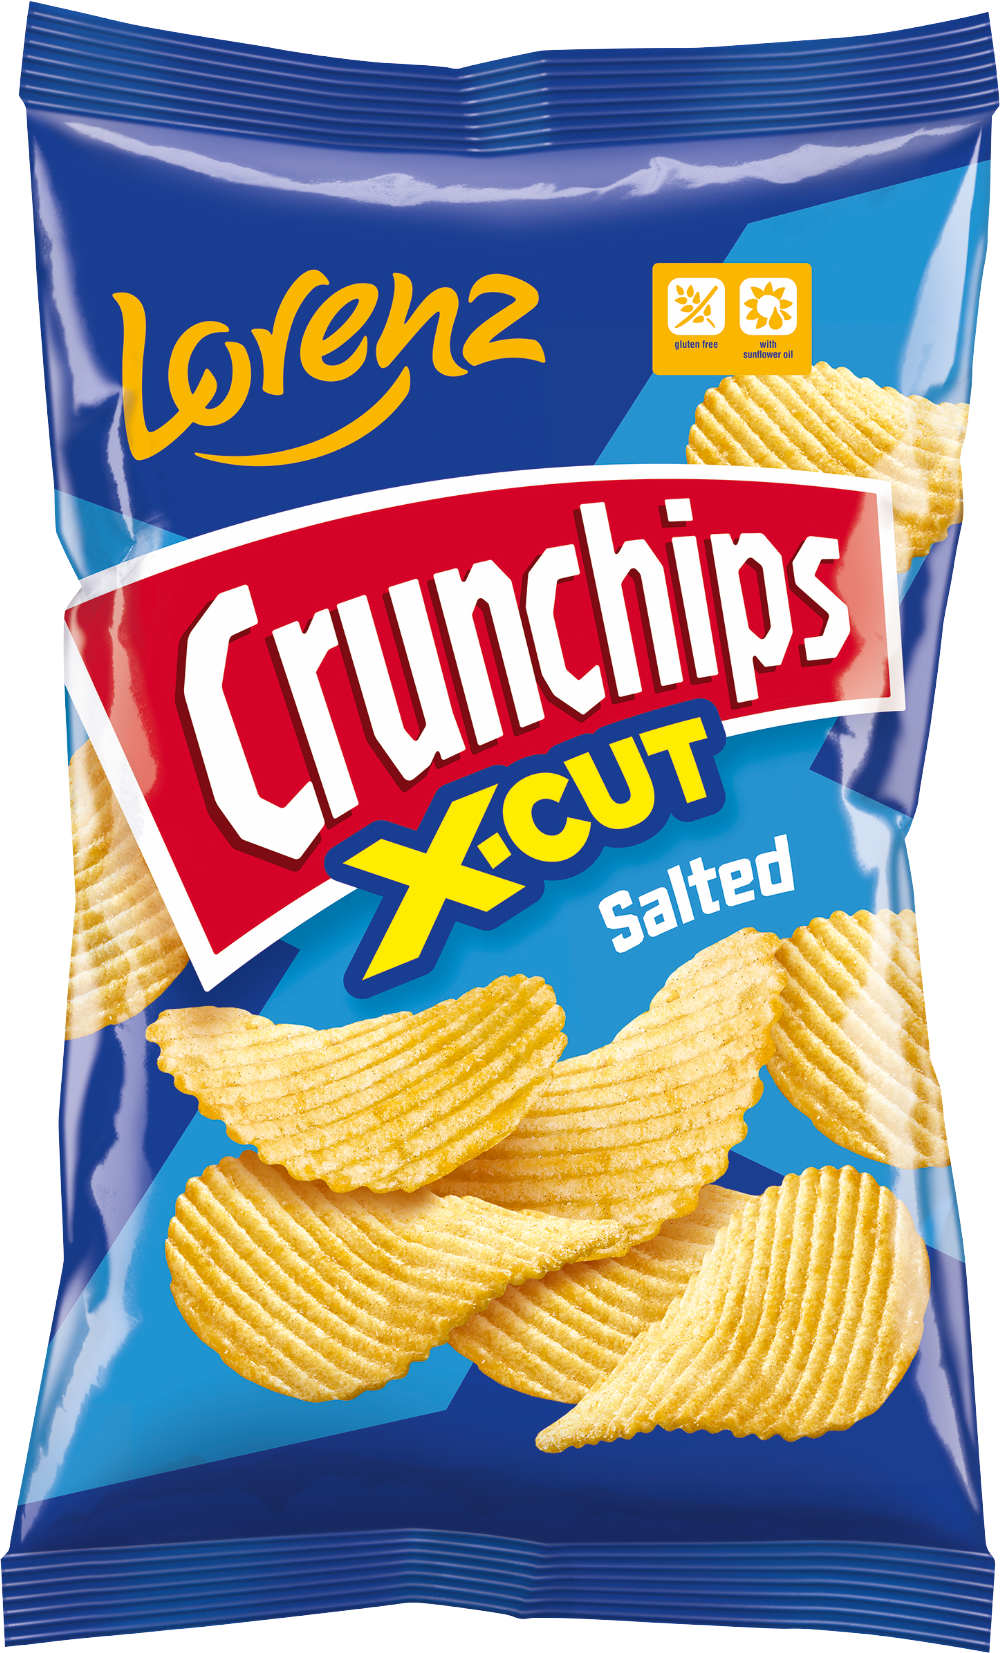 LORENZ Crunchips - Salted 150g